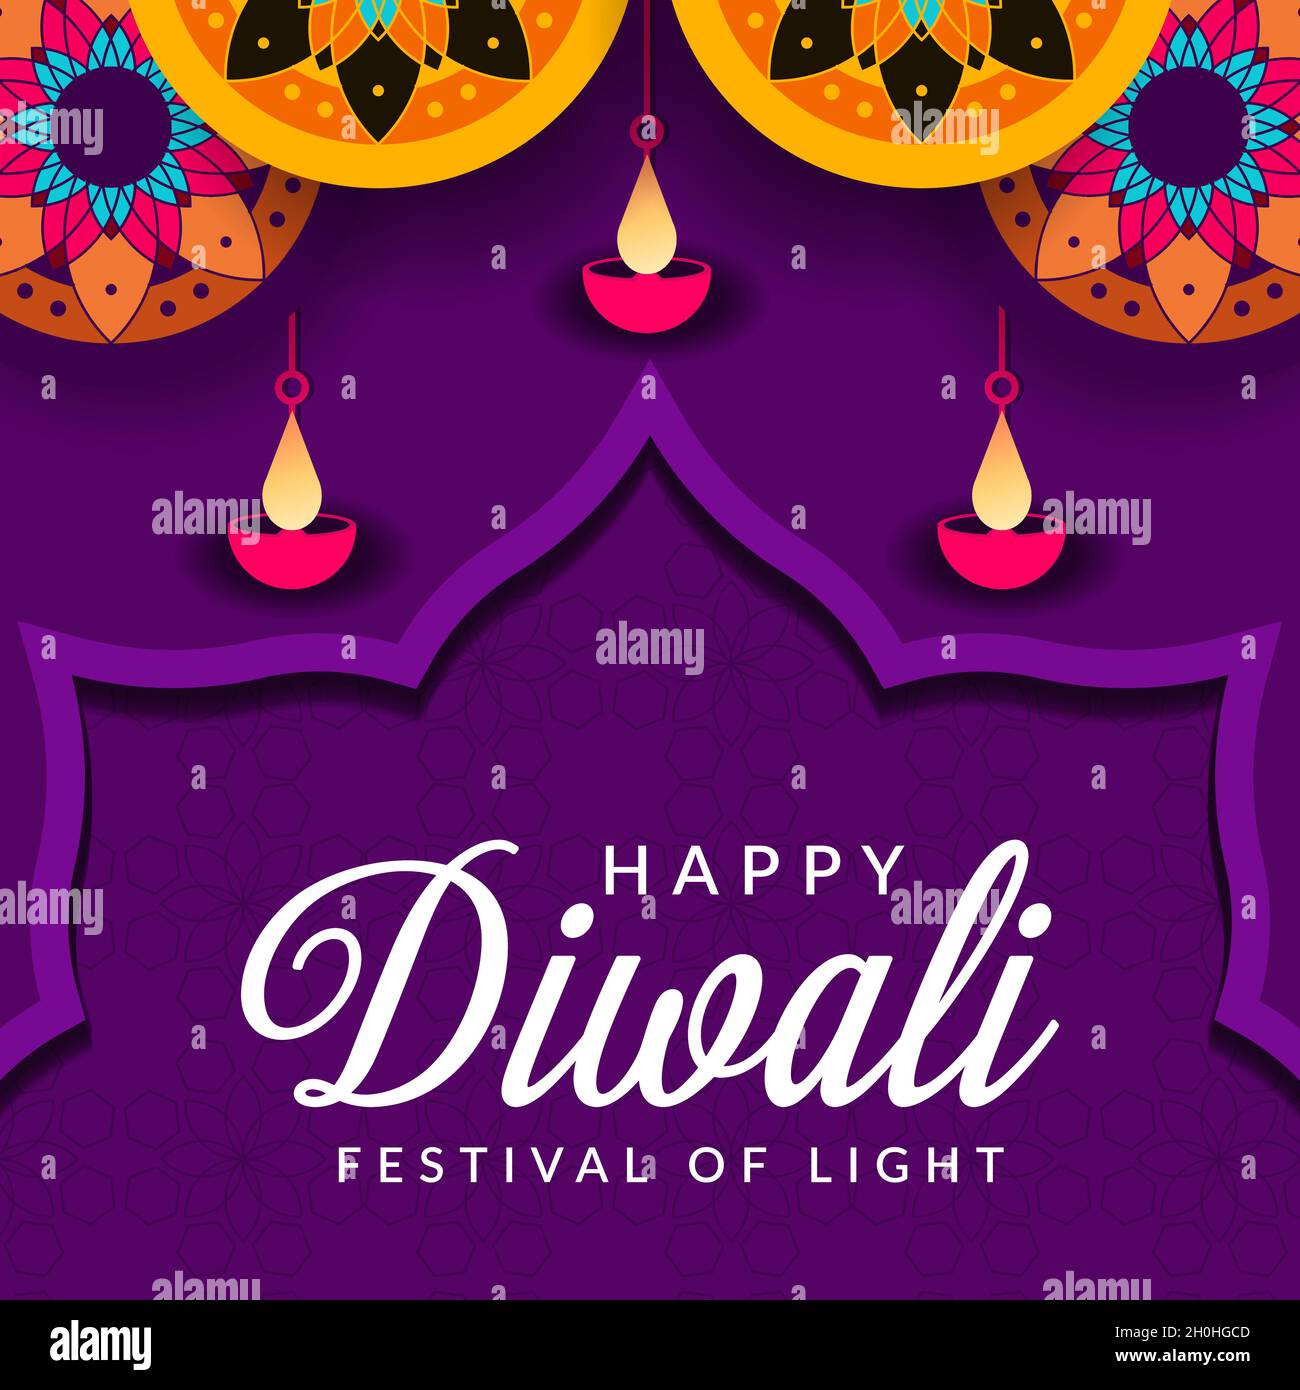 Chúc mừng lễ Diwali: Diwali là một trong những lễ hội lớn nhất và vui nhộn nhất trong nền văn hóa Ấn Độ. Hãy cùng chúc mừng cho những người đang ăn mừng Diwali bằng cách xem hình ảnh liên quan này!